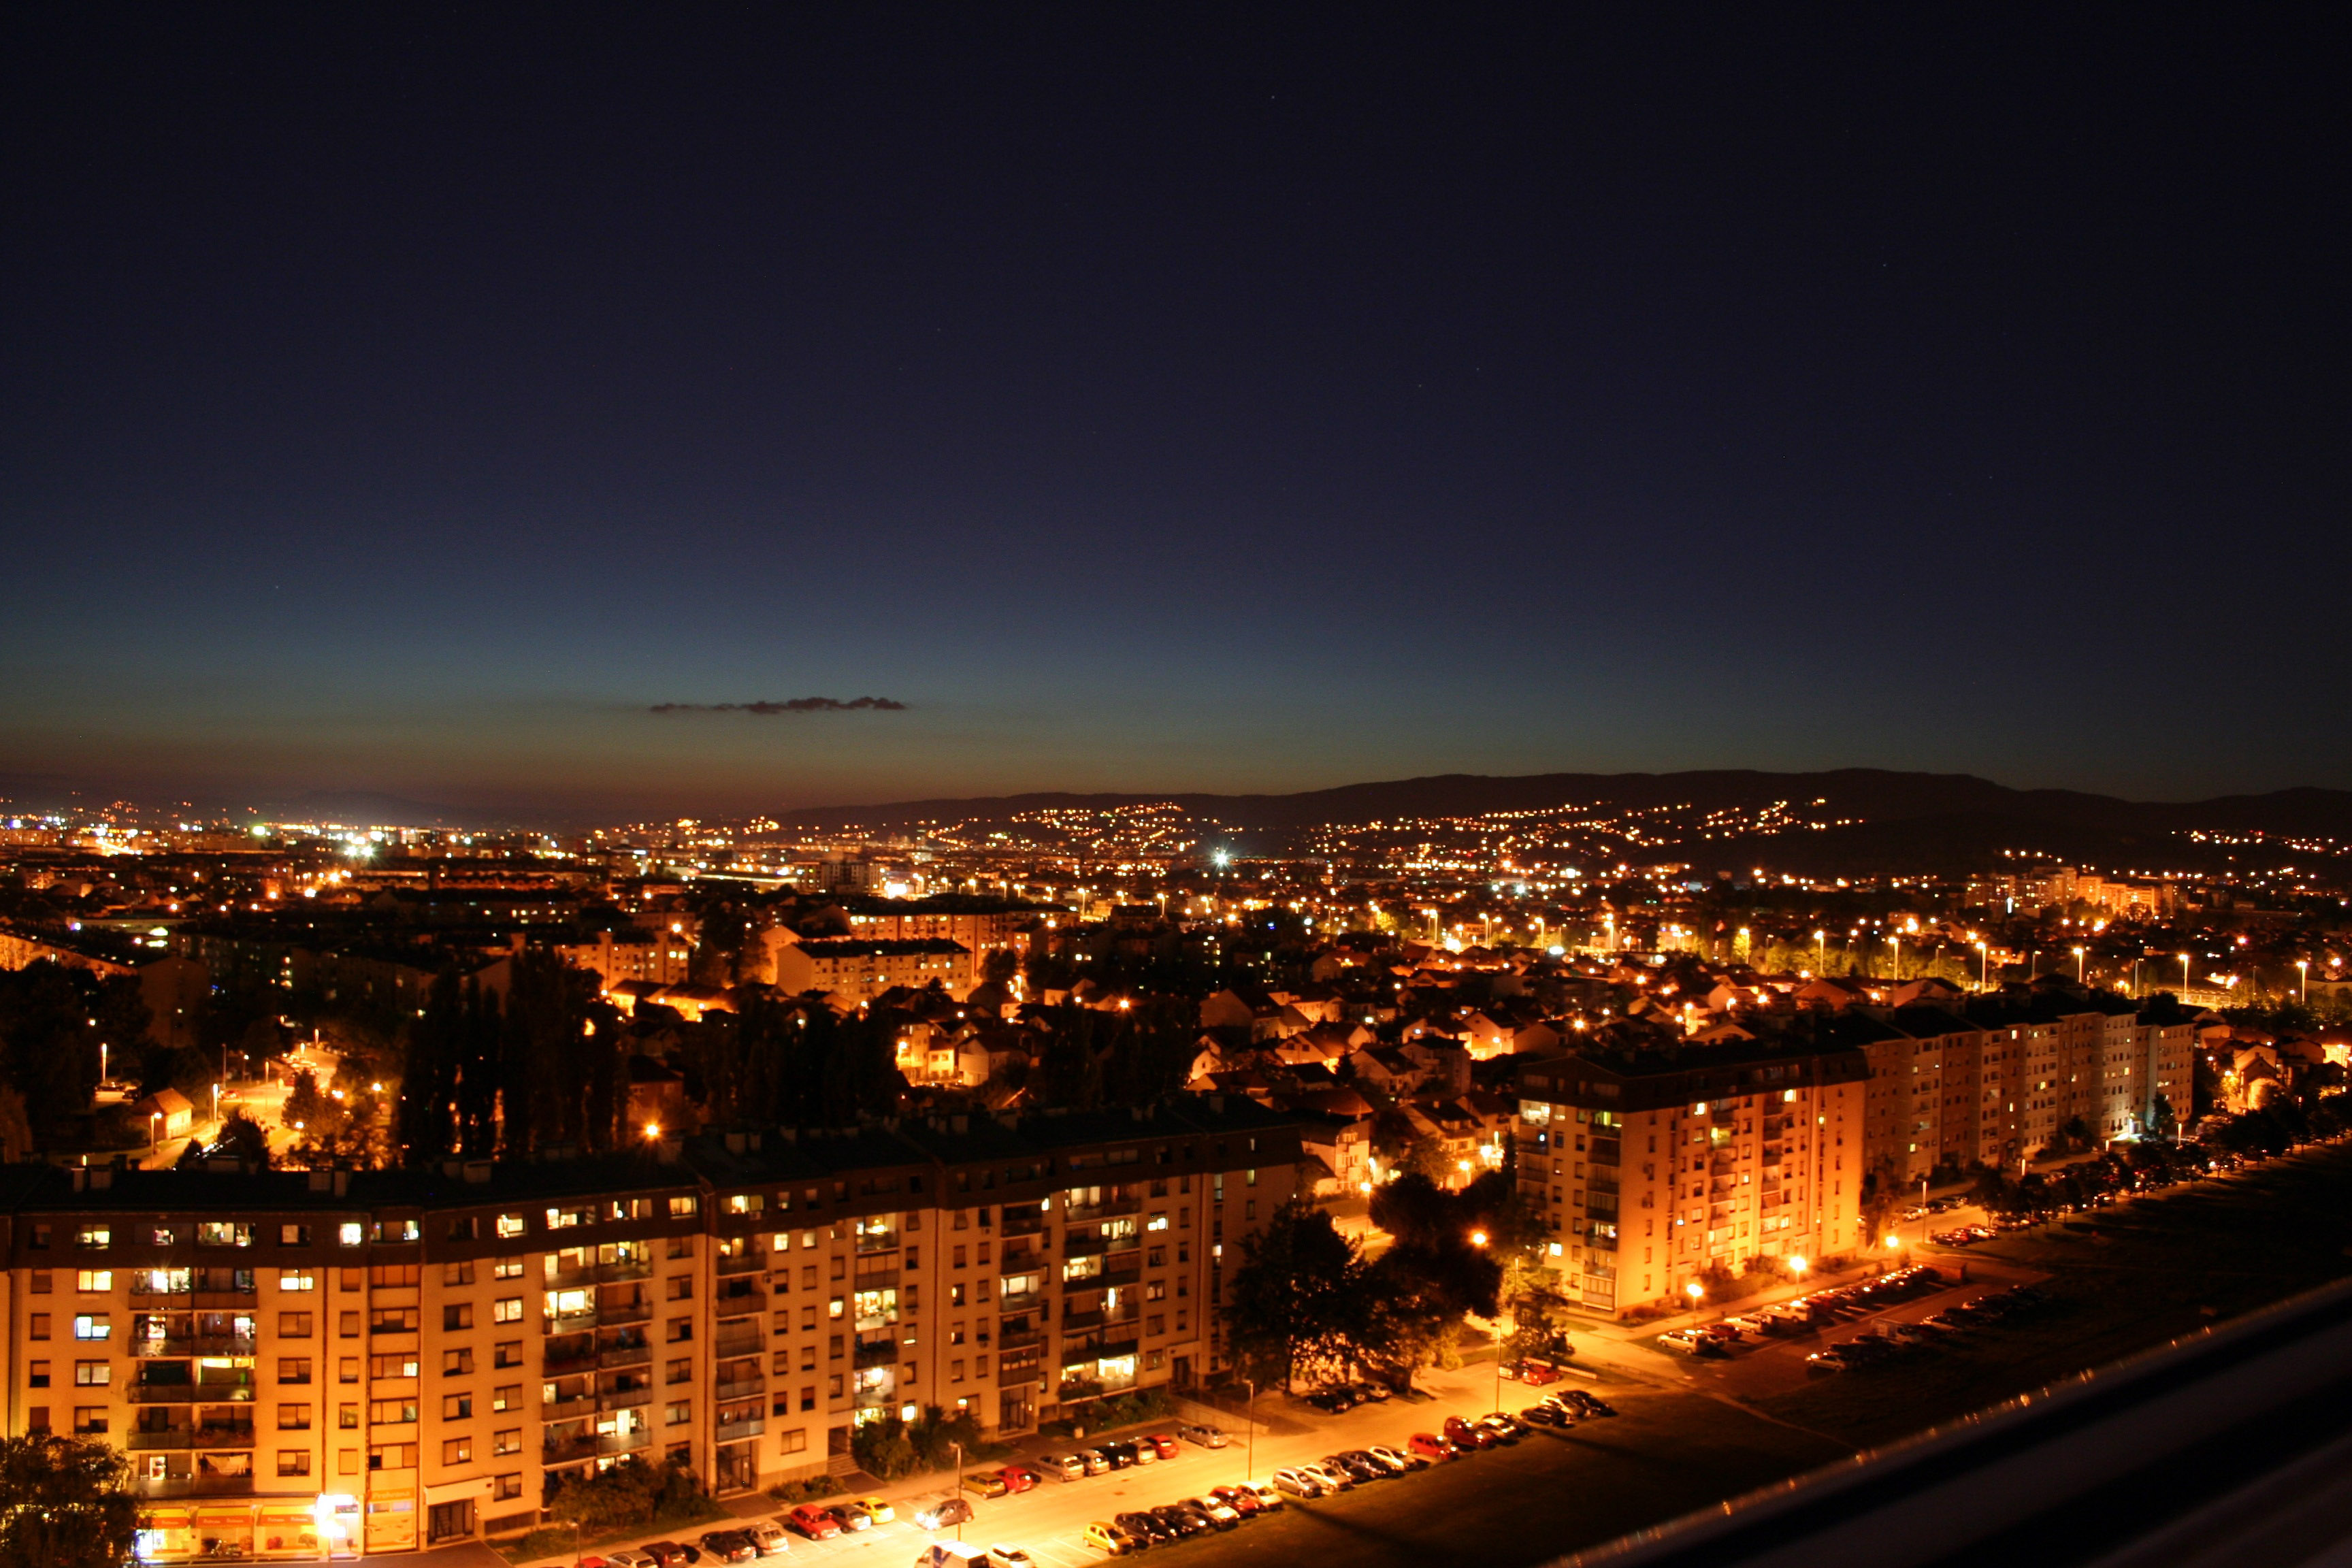 Night Cityscape In Zagreb Croatia Image Free Stock Photo